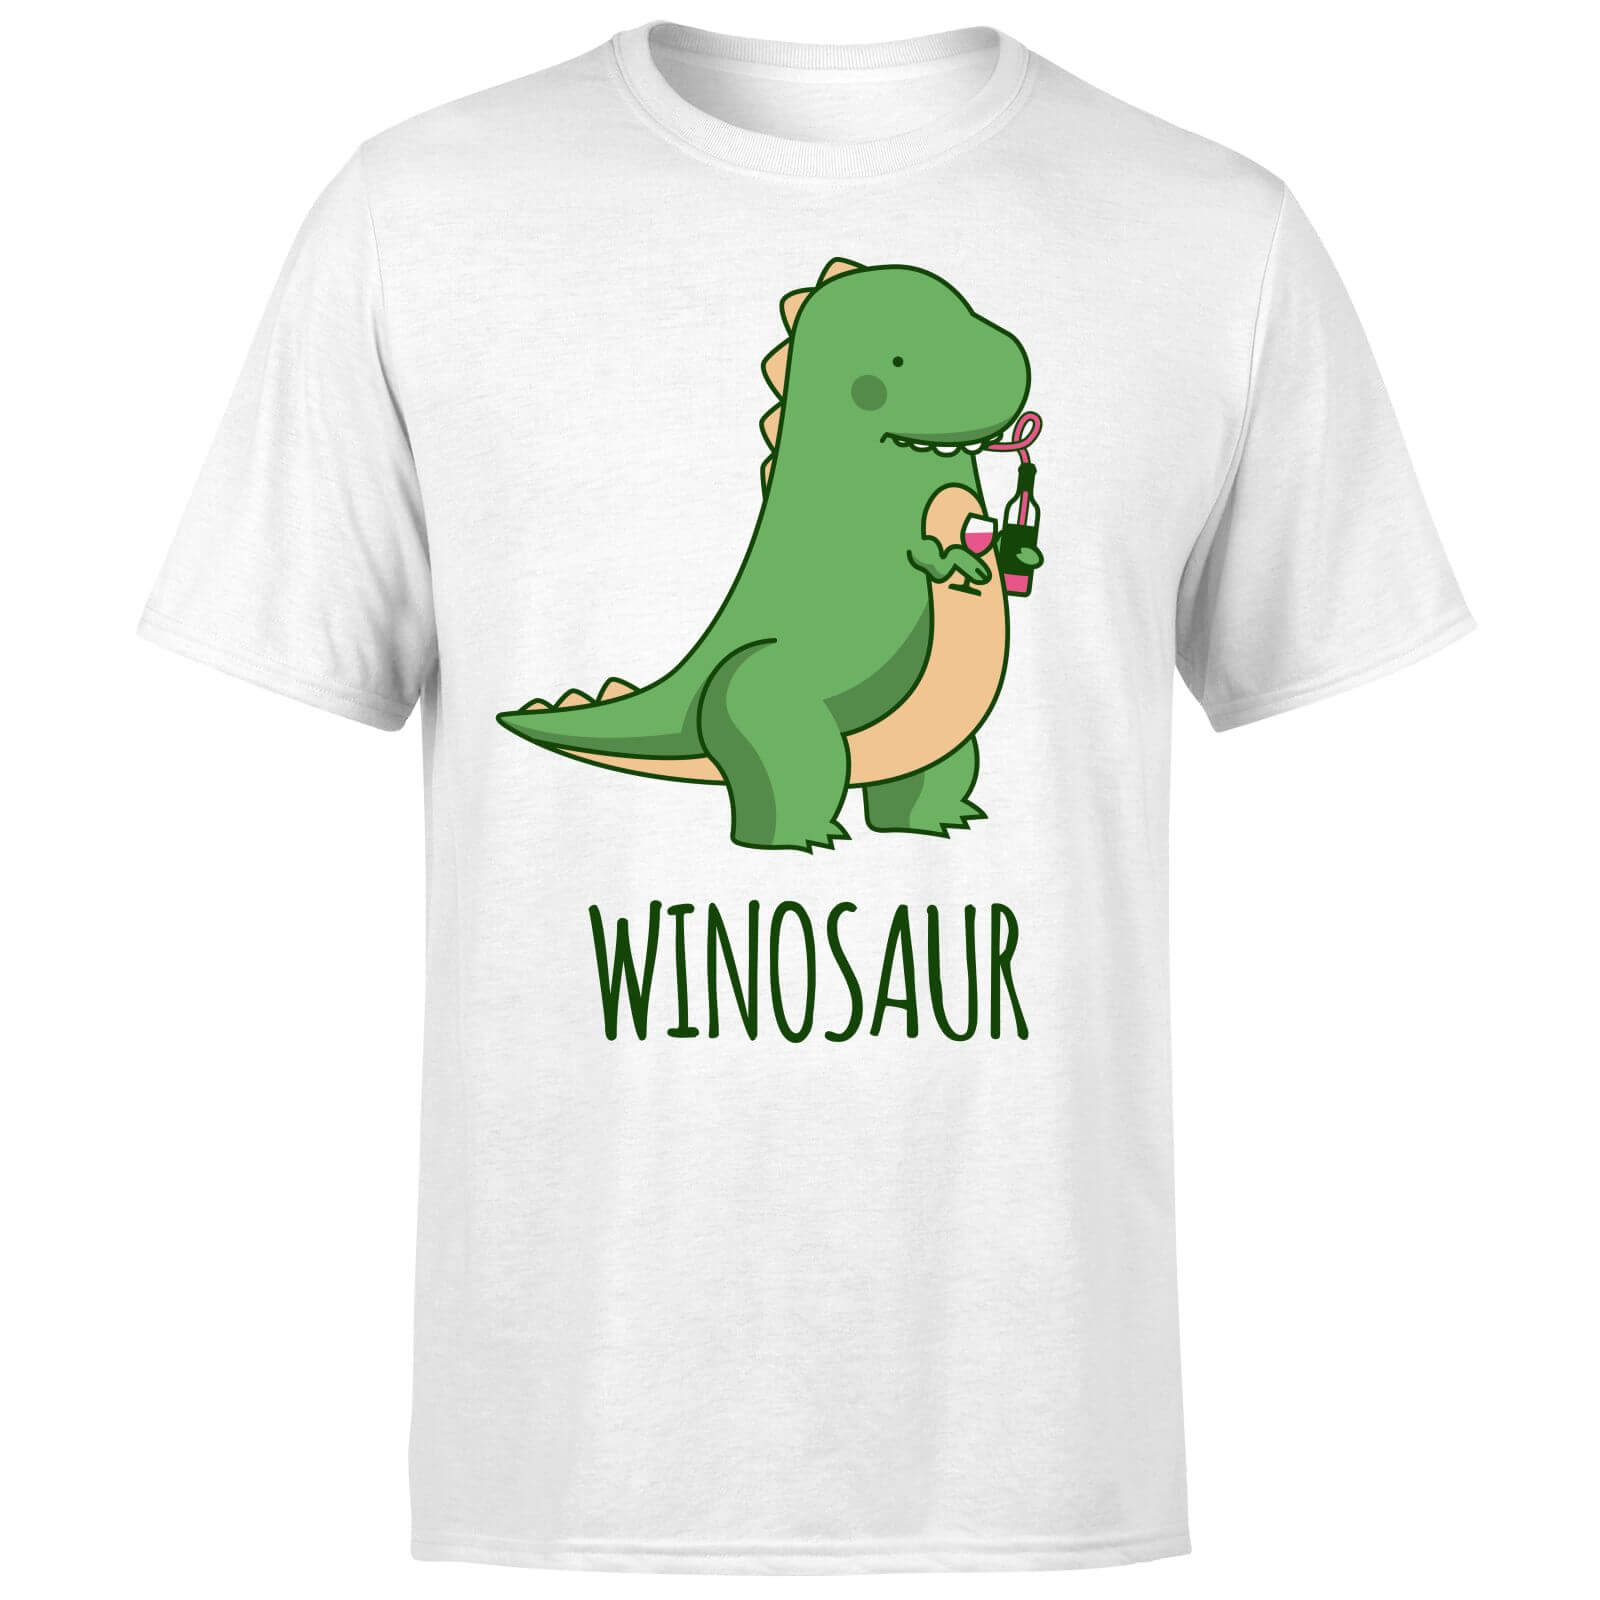 Winosaur T-Shirt - White - S - White